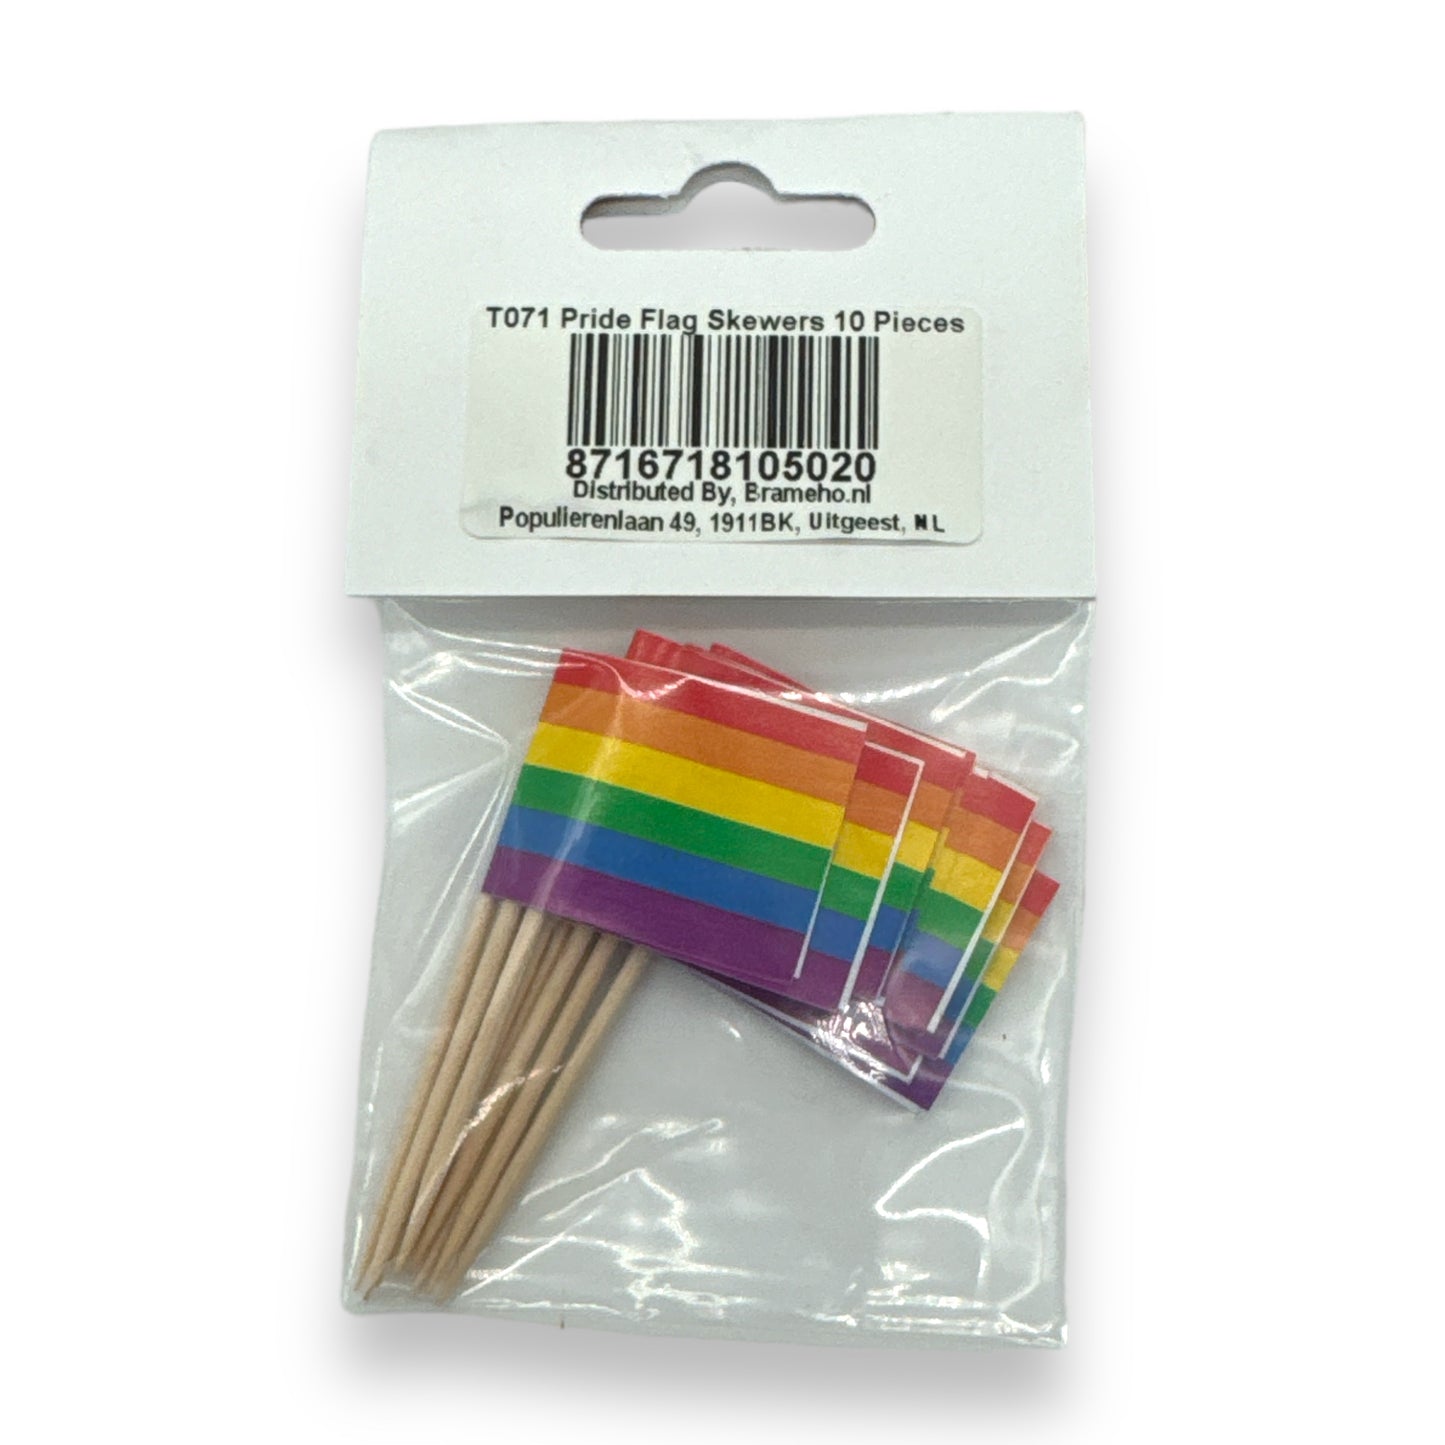 Kinky Pleasure - T071 - Pride Flag Party Skewers - 10 Piece Set